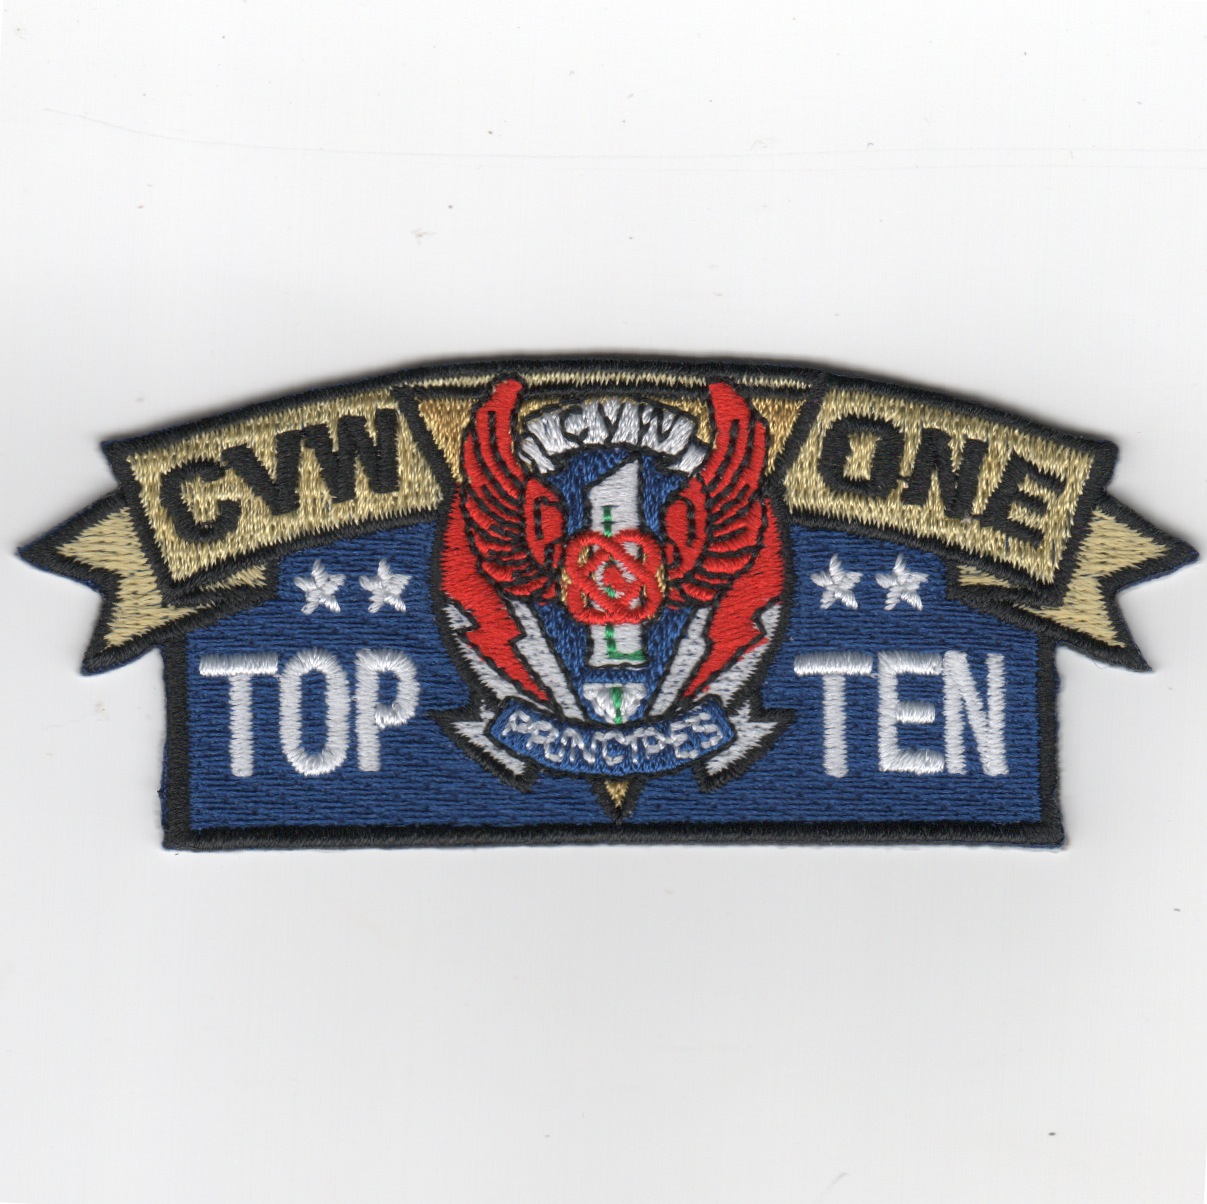 CVW-1 'TOP TEN' Award Patch